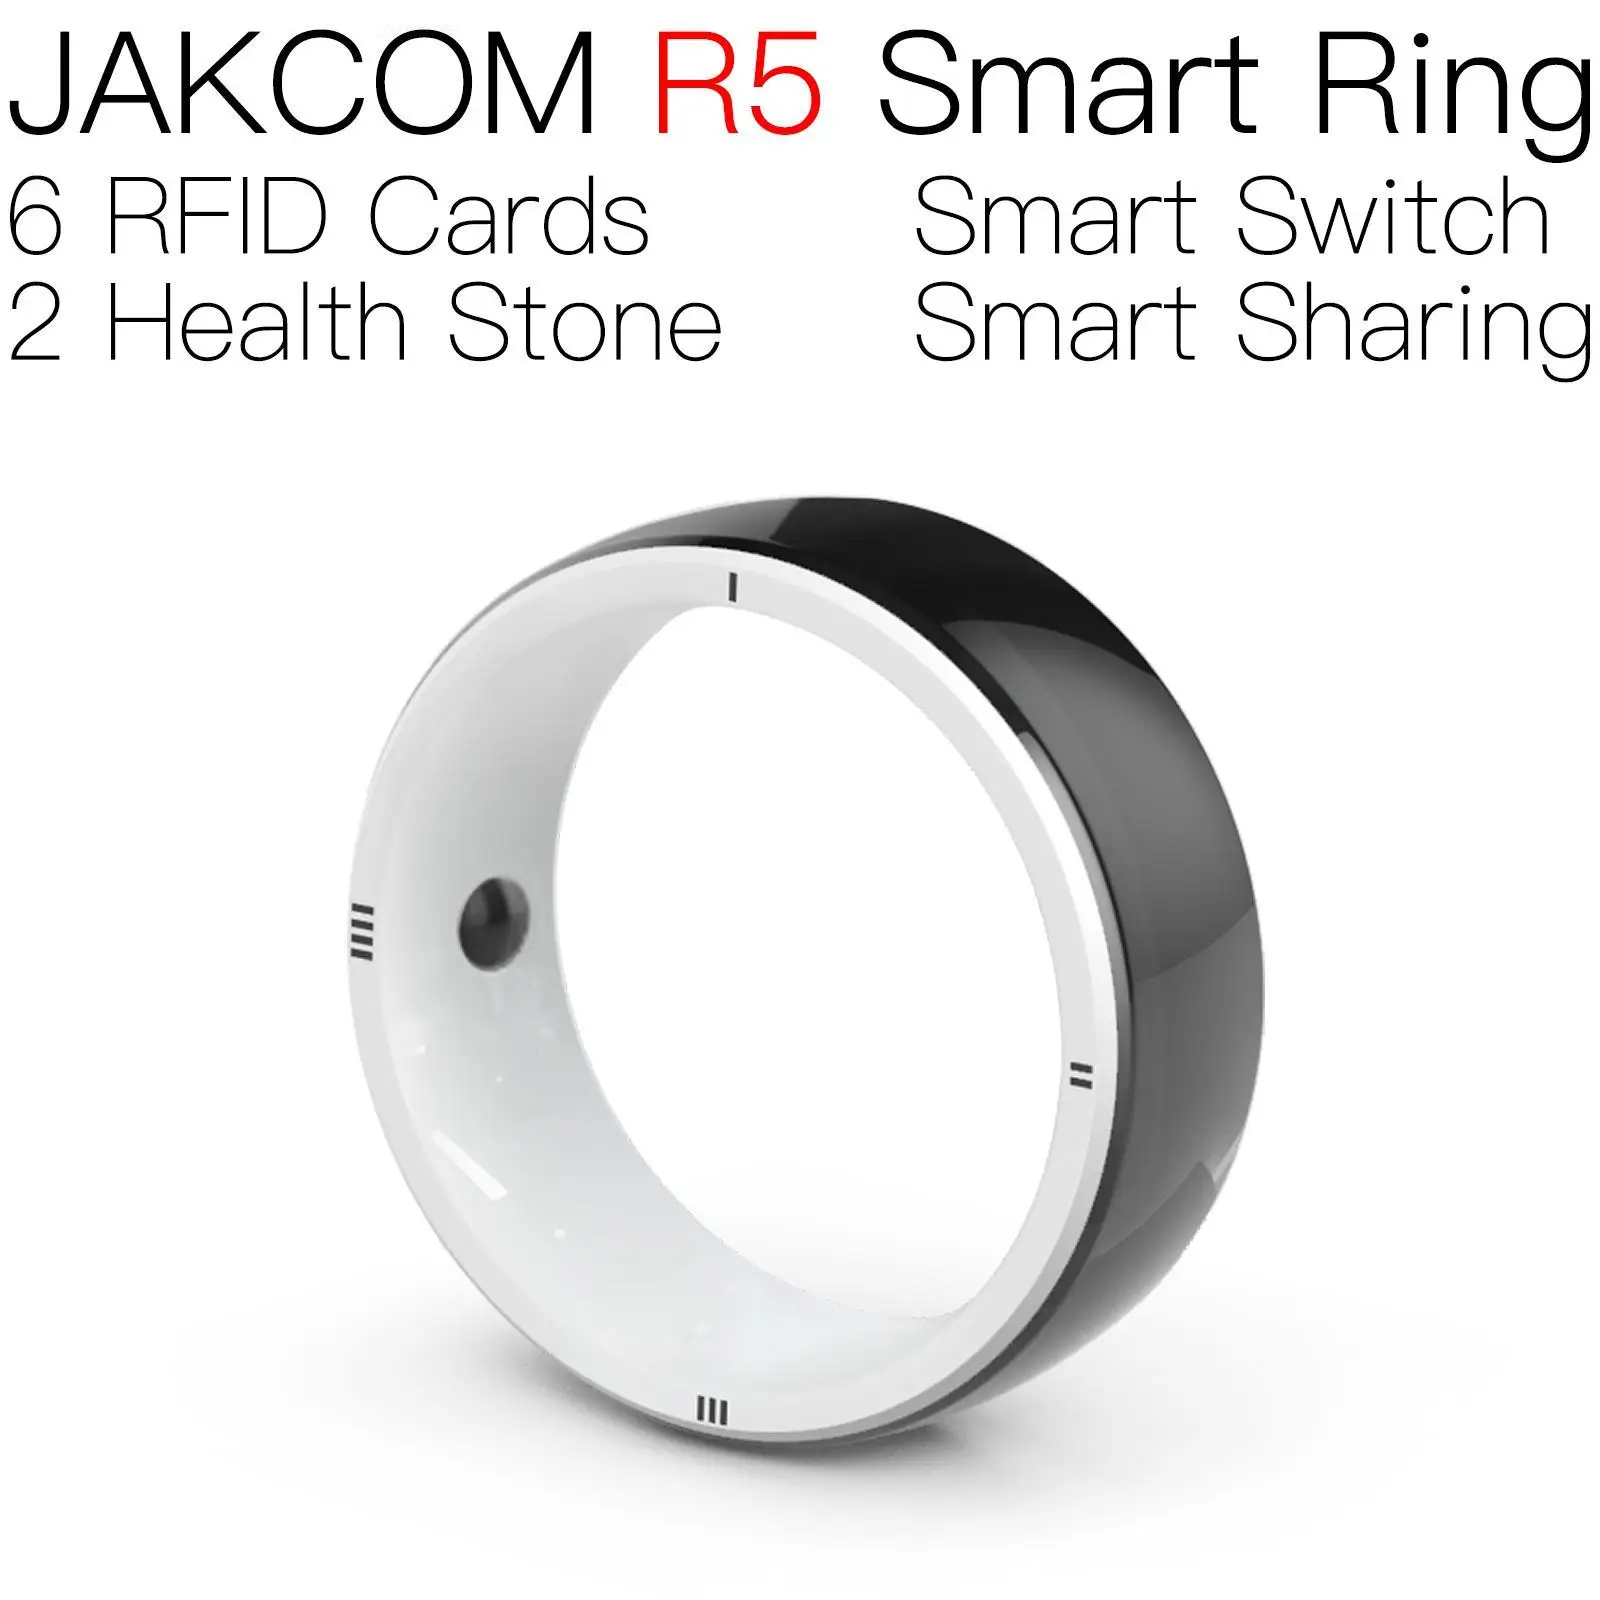 

Умное кольцо JAKCOM R5, новее, чем стандартная метка, МГц, ветеринарное оборудование, cob, сварка, чип hwfly, rfid 125, ntag215, мини-карта, надежный, большой радиус действия